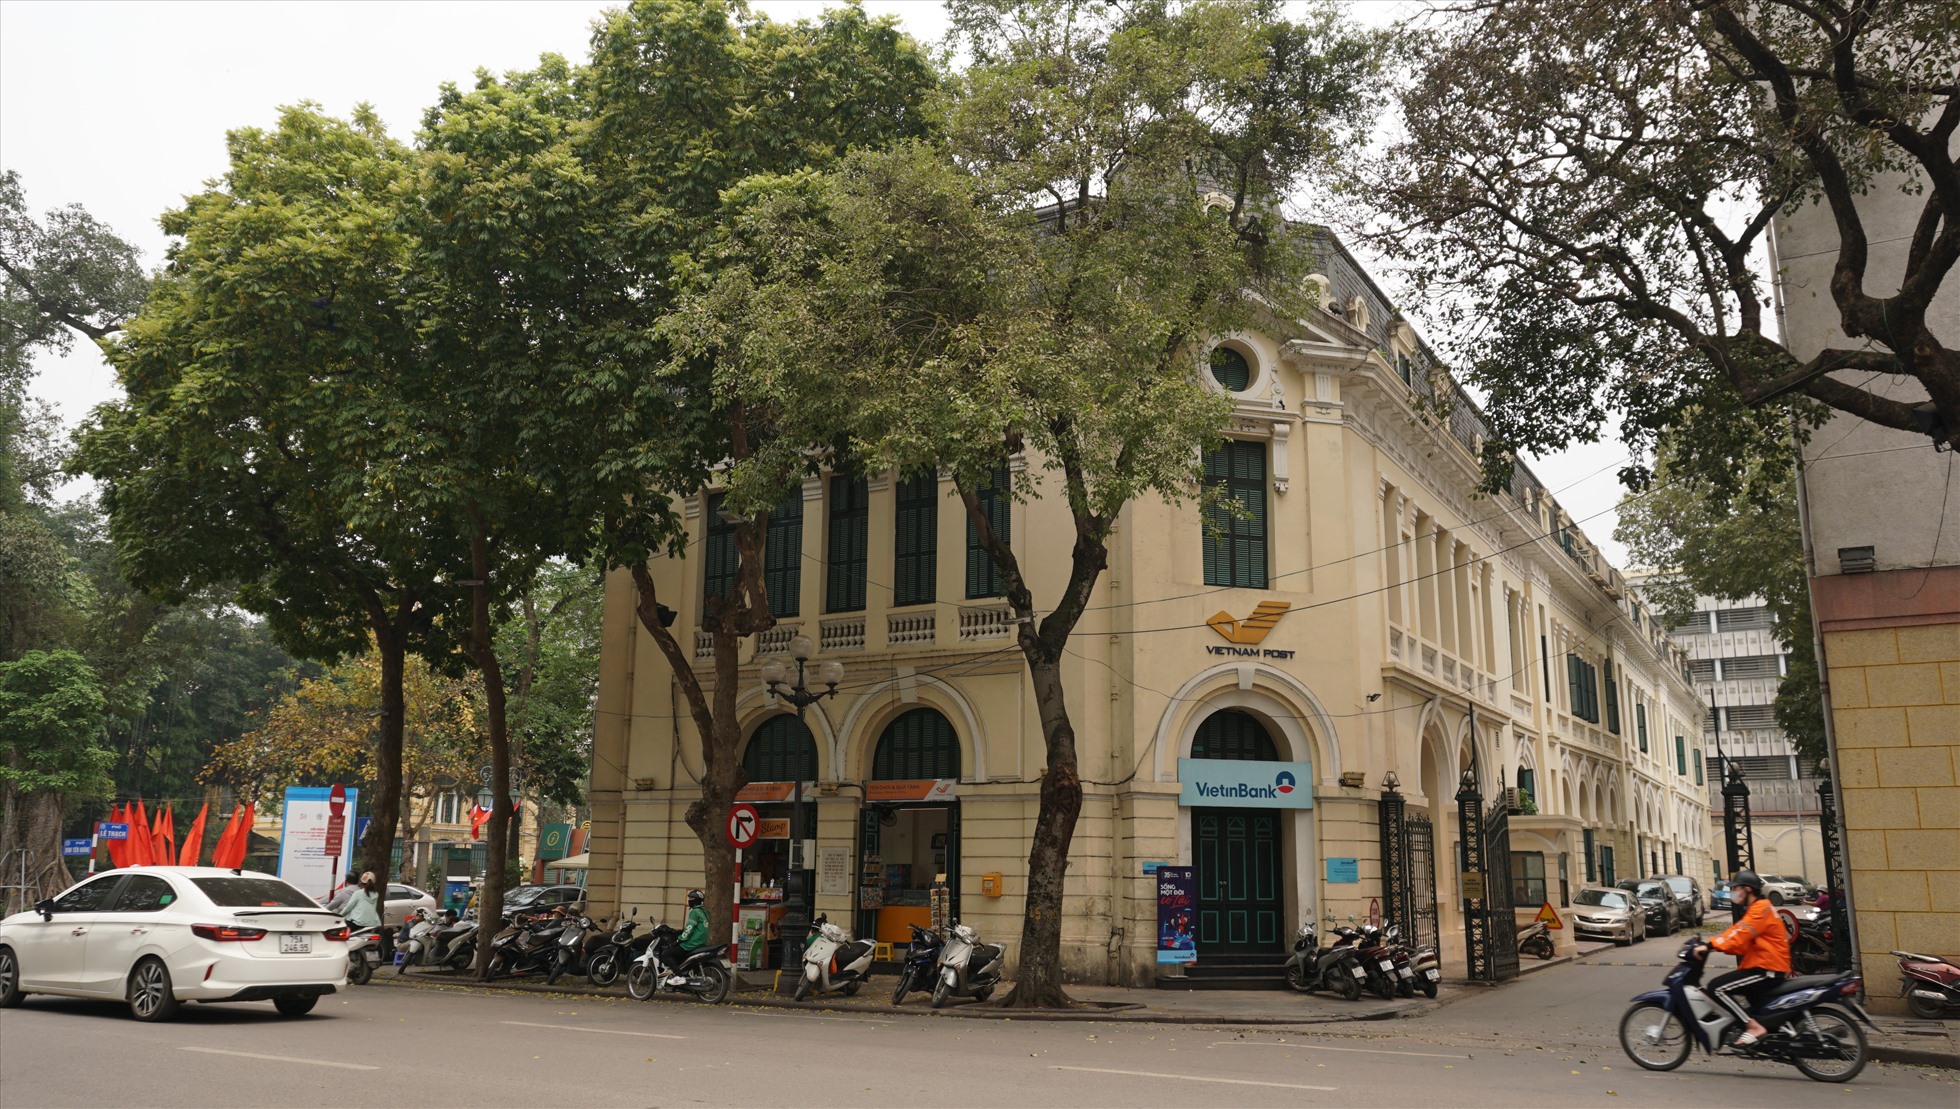 Bưu điện Hà Nội (phường Tràng Tiền, Hoàn Kiếm, Hà Nội) nằm bên hồ Gươm. Công trình mang phong cách cổ điển châu Âu do kiến trúc sư Auguste Henri Vildeu thiết kế, được đưa vào sử dụng năm 1896.